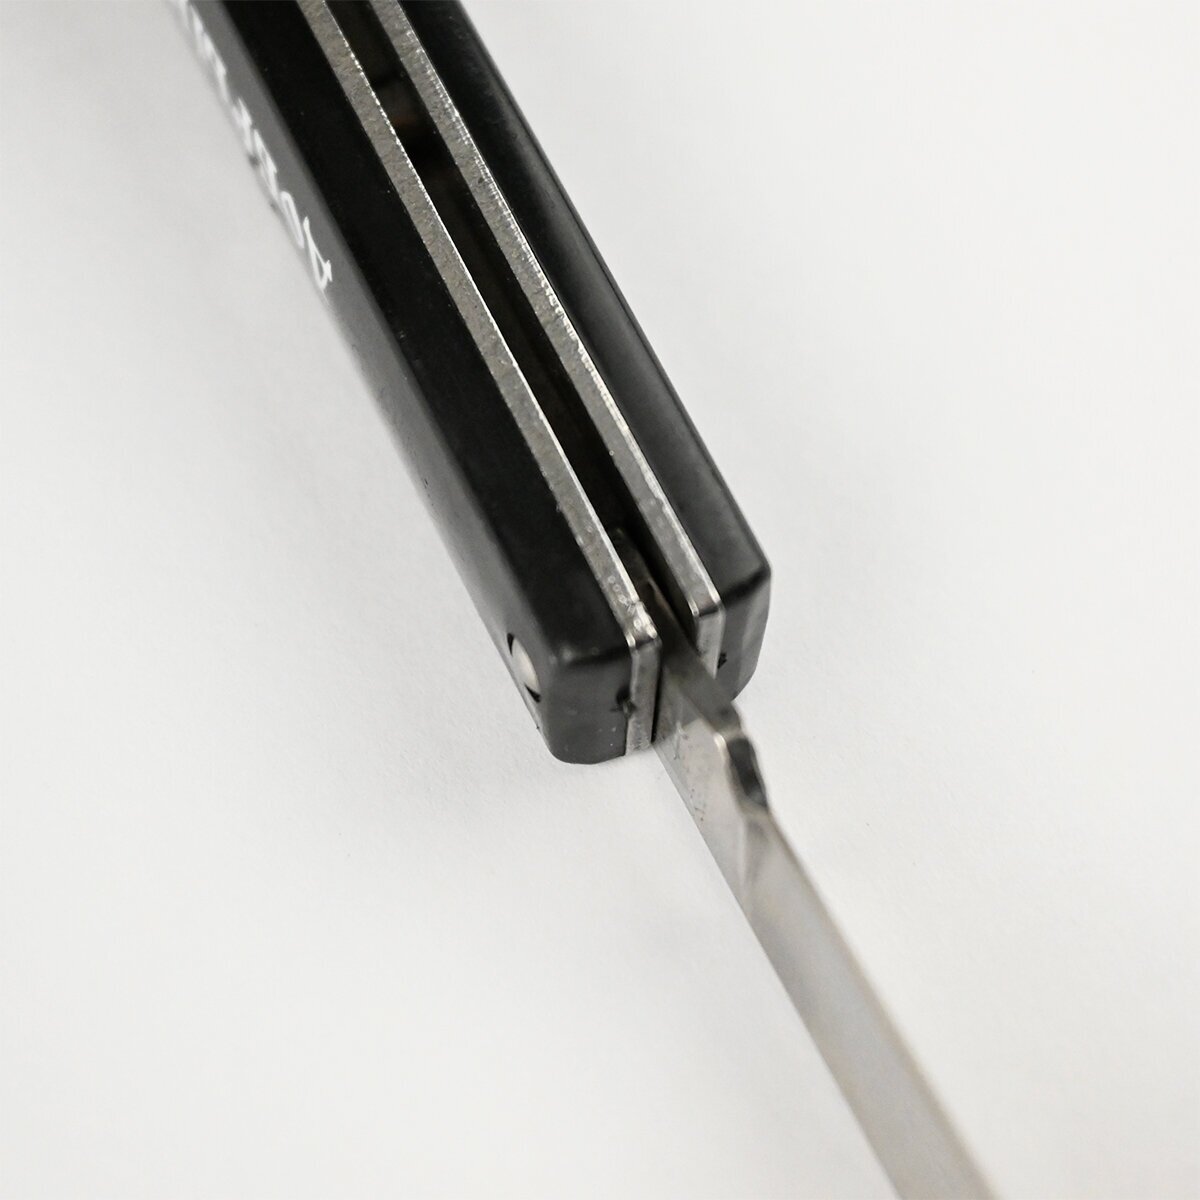 Нож копулировочный Добрыня ручка пластик, лезвие нержавеющая сталь 66 мм / Складной нож садовый прививочный